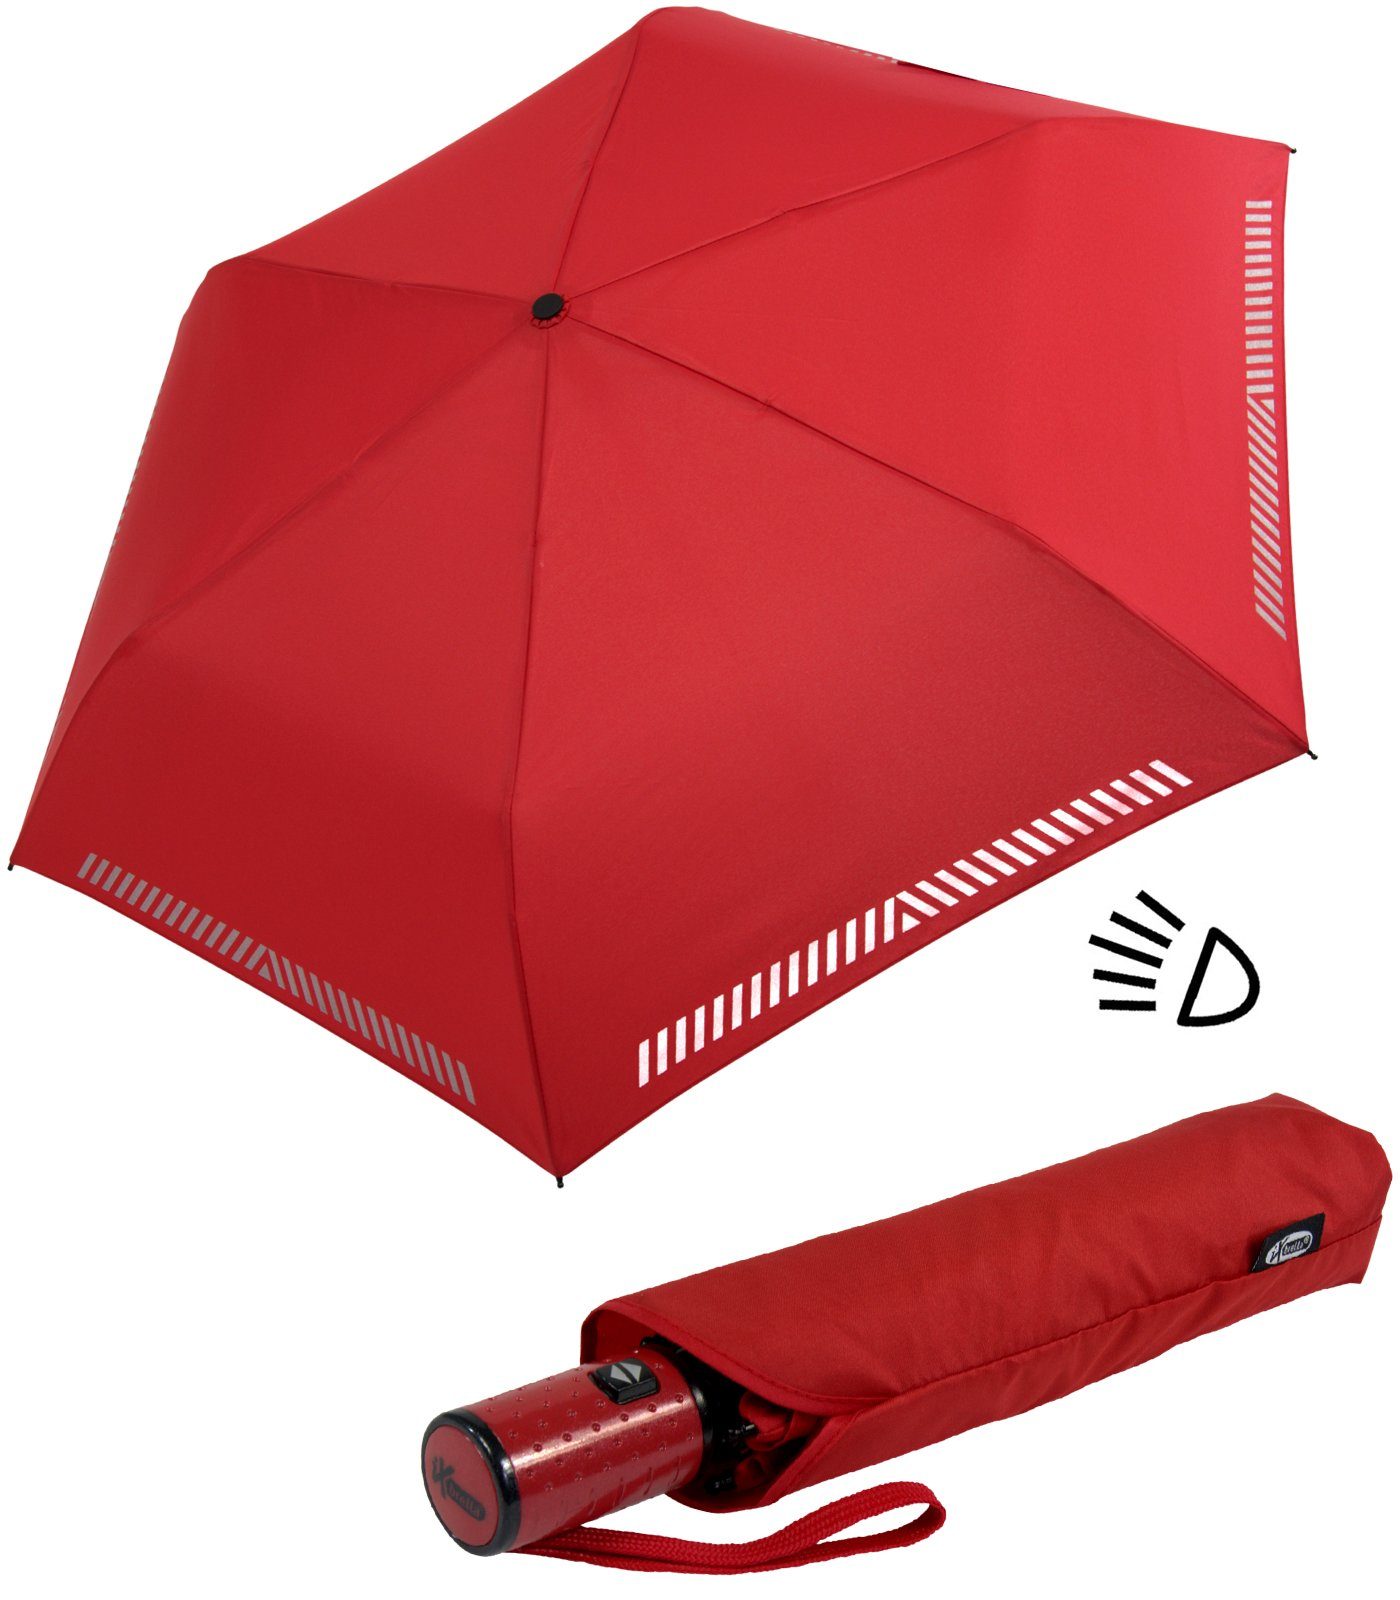 Sicherheit durch iX-brella rot - reflektierend, Taschenregenschirm Reflex-Streifen Kinderschirm Auf-Zu-Automatik, mit